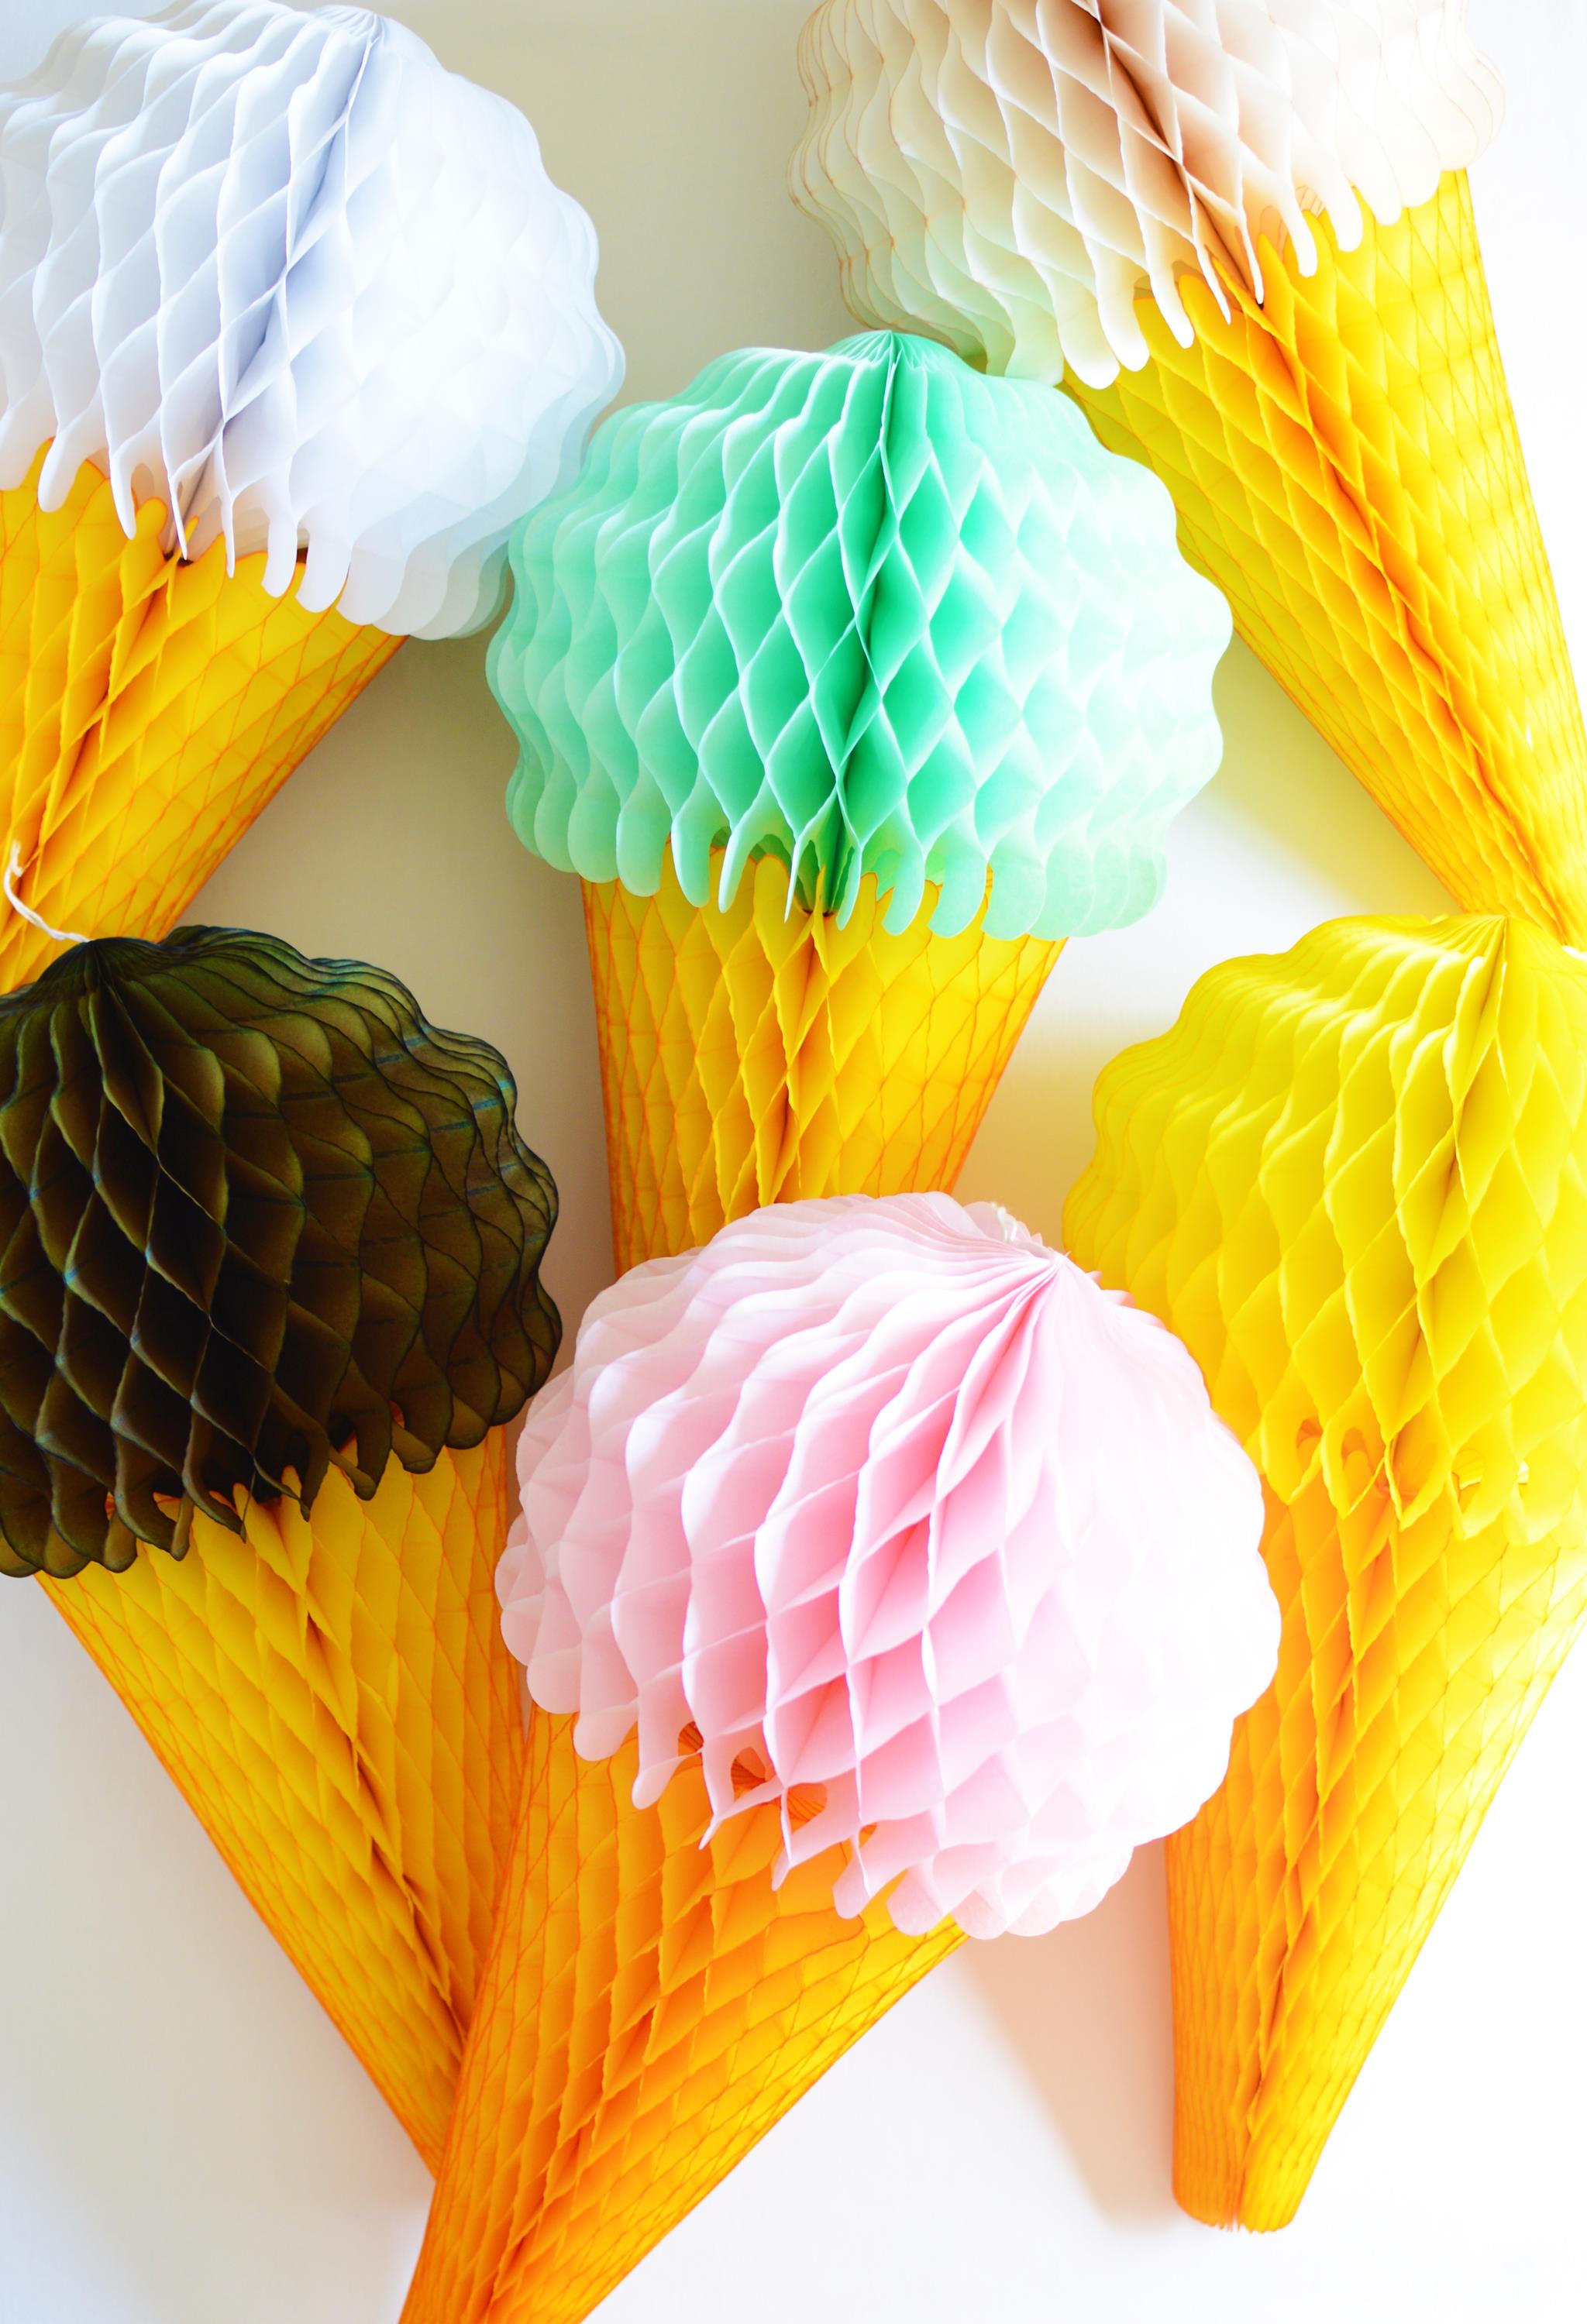 Honeycomb Tissue Paper Ice Cream Cones